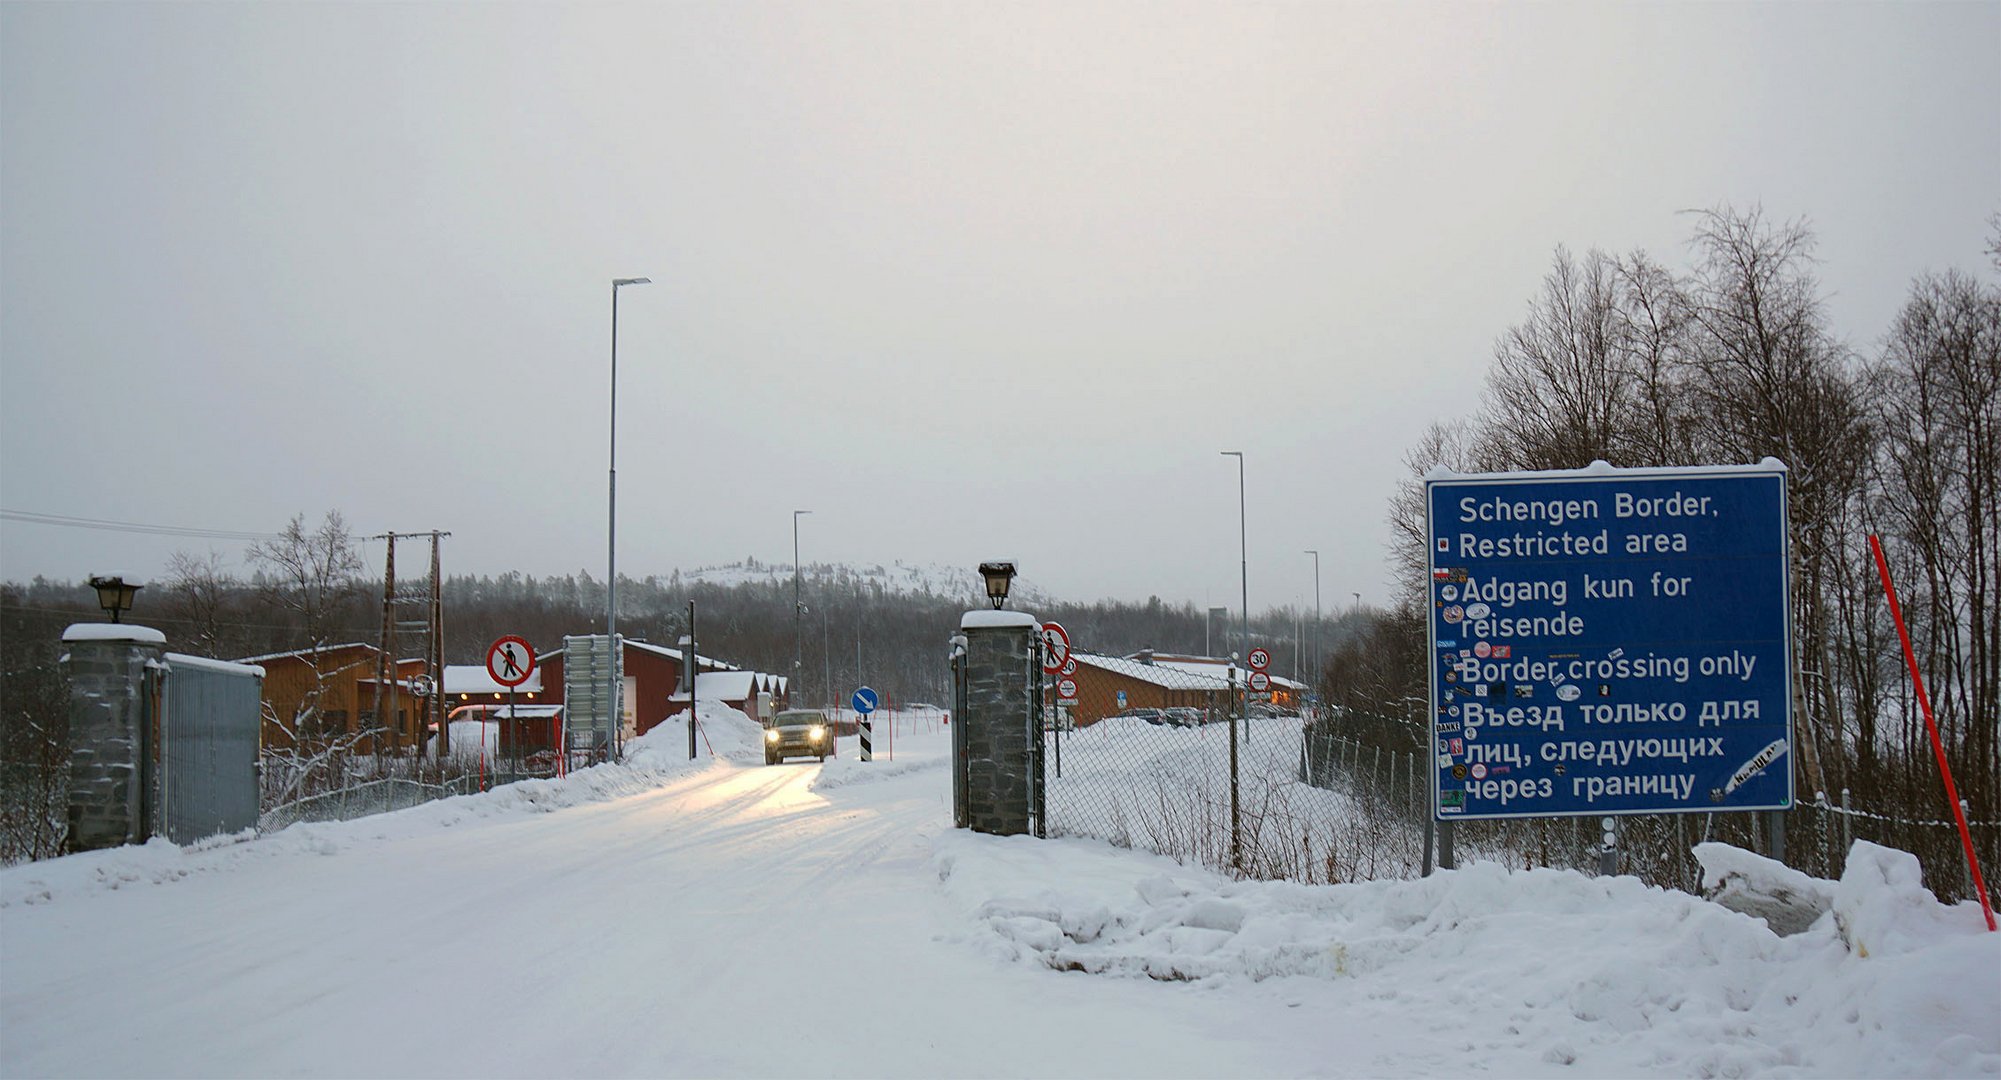 Schengen Border